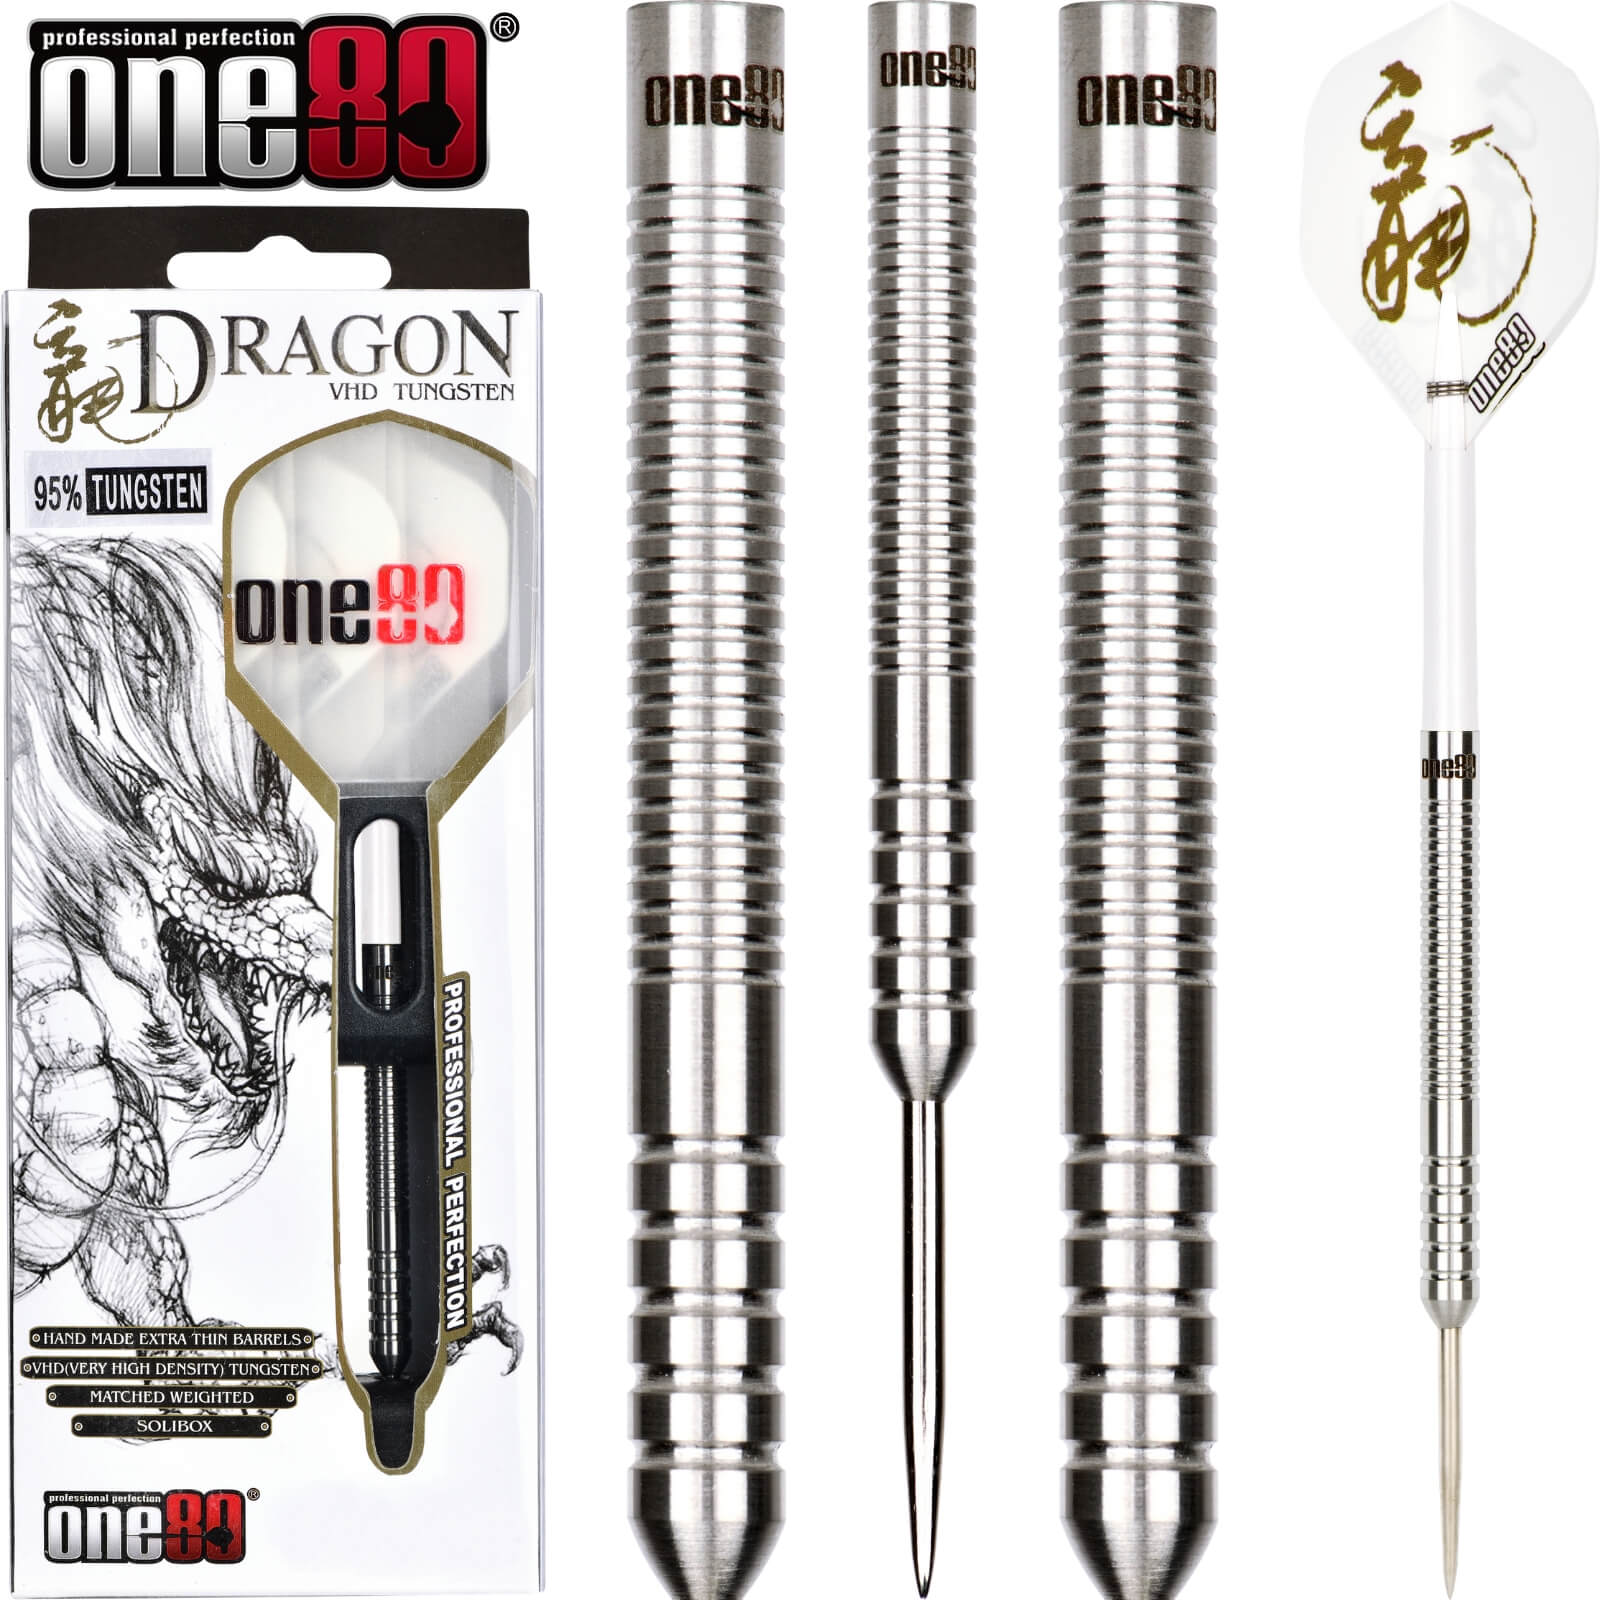 Darts - One80 - Dragon Darts - Steel Tip - 90% Tungsten - 20g 22g 24g 26g 